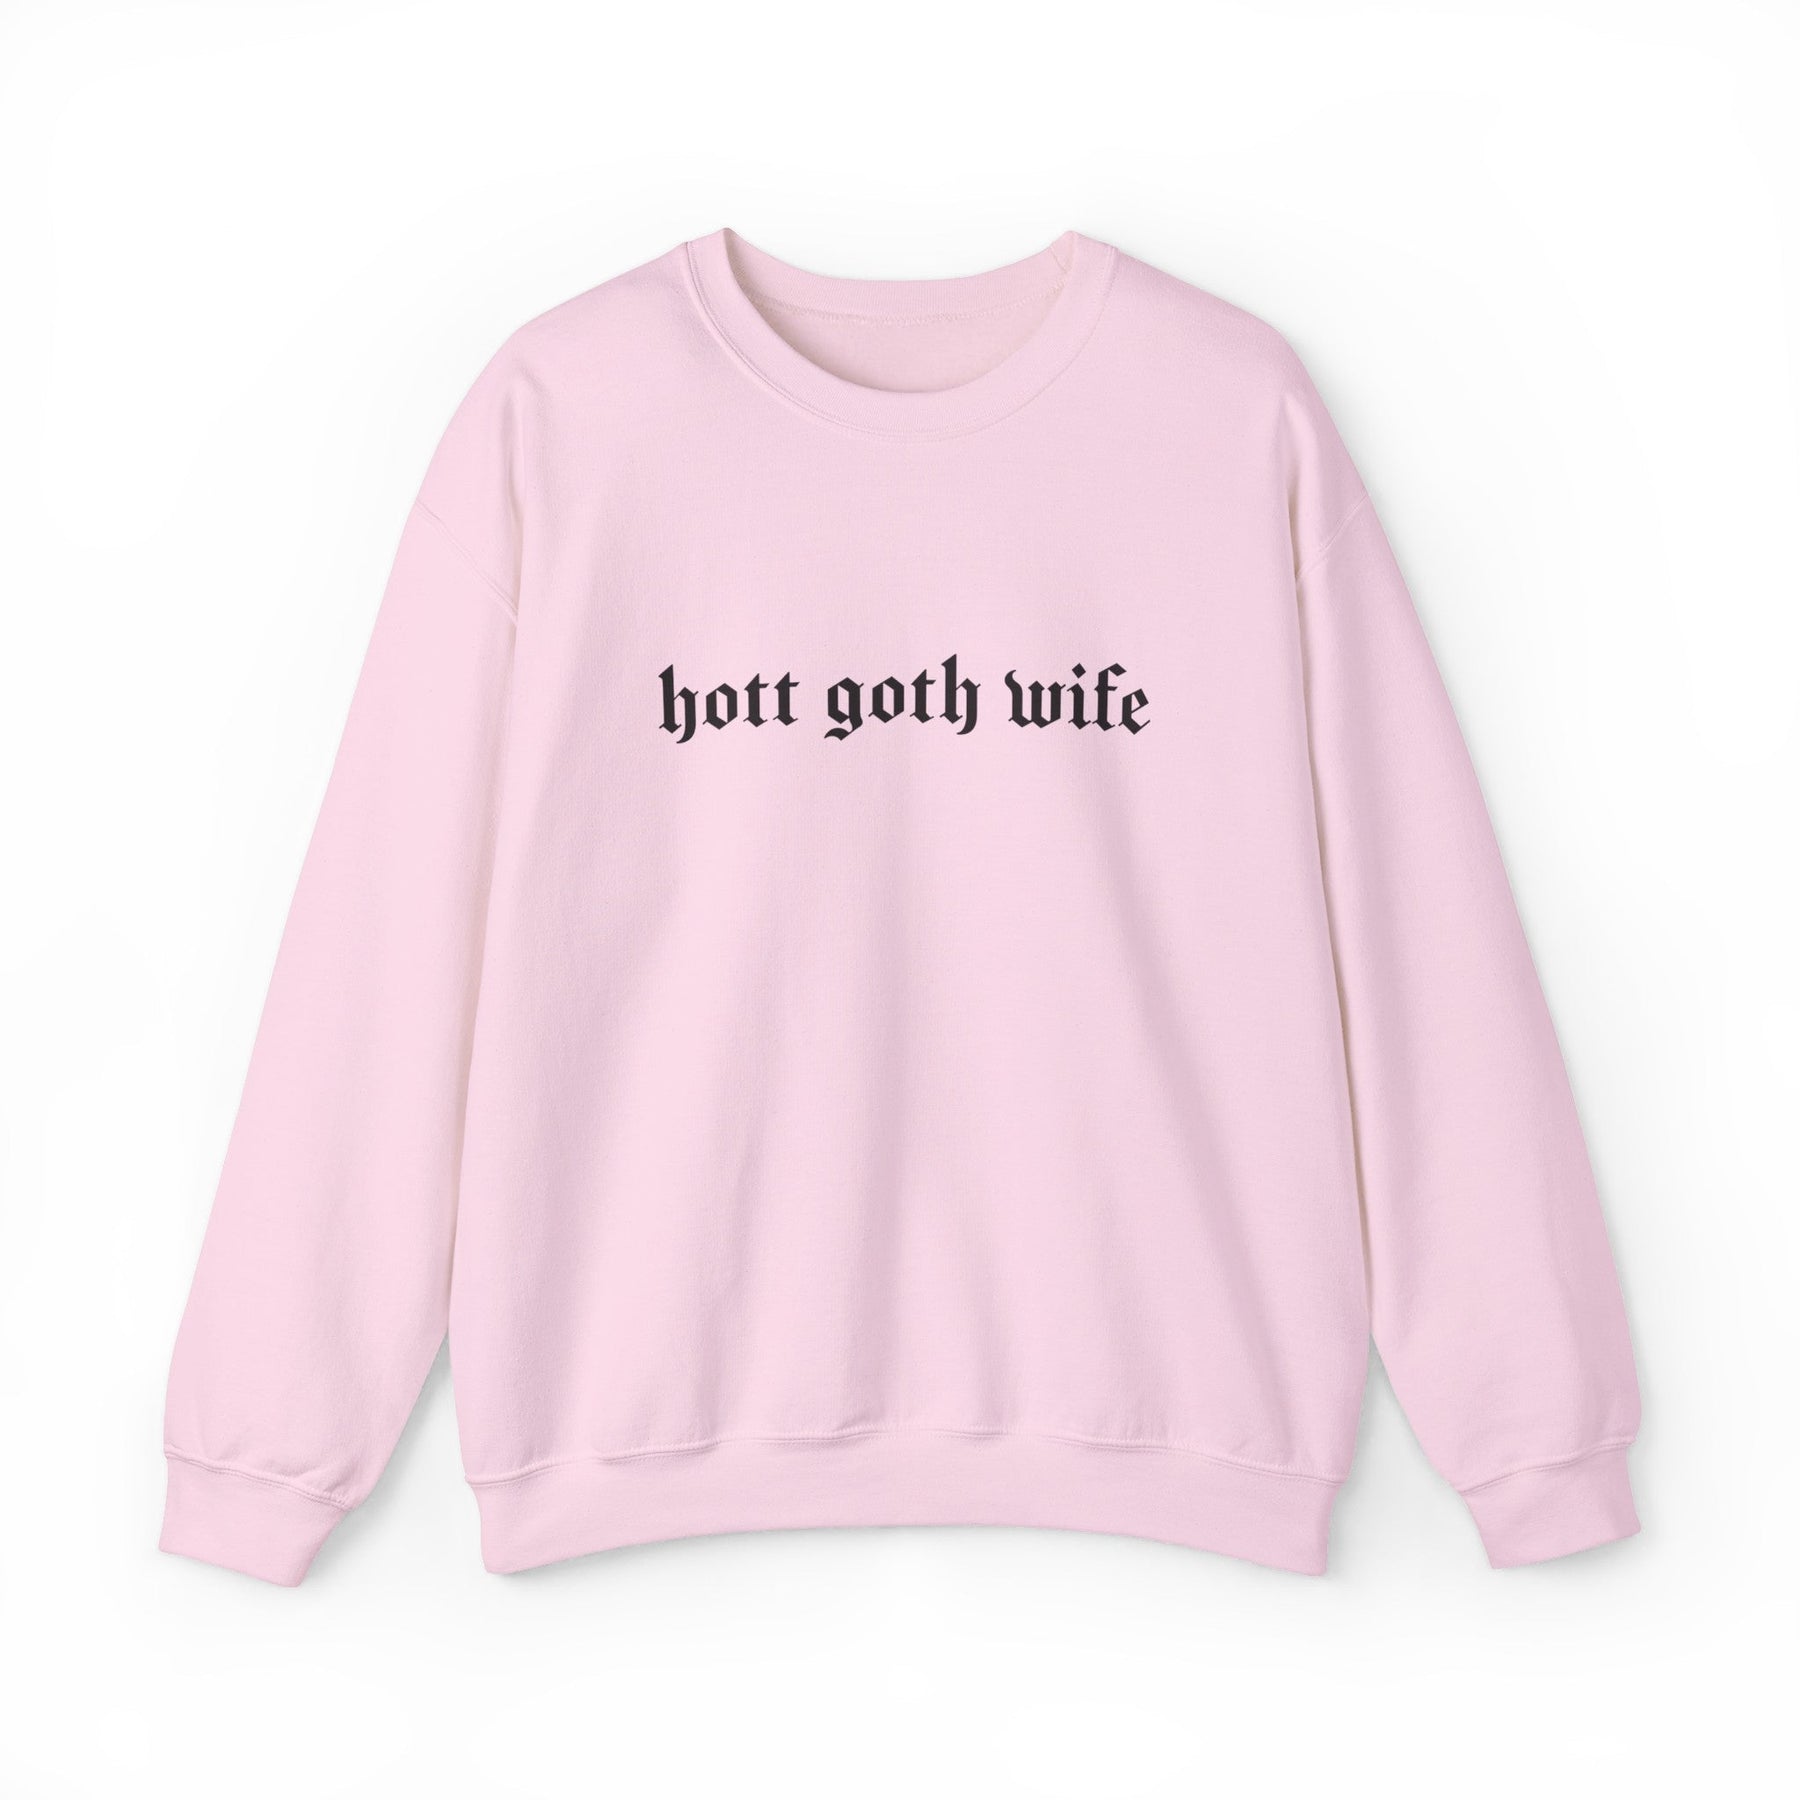 Hott Goth Wife Long Sleeve Crew Neck Sweatshirt - Goth Cloth Co.Sweatshirt27778448478259759825